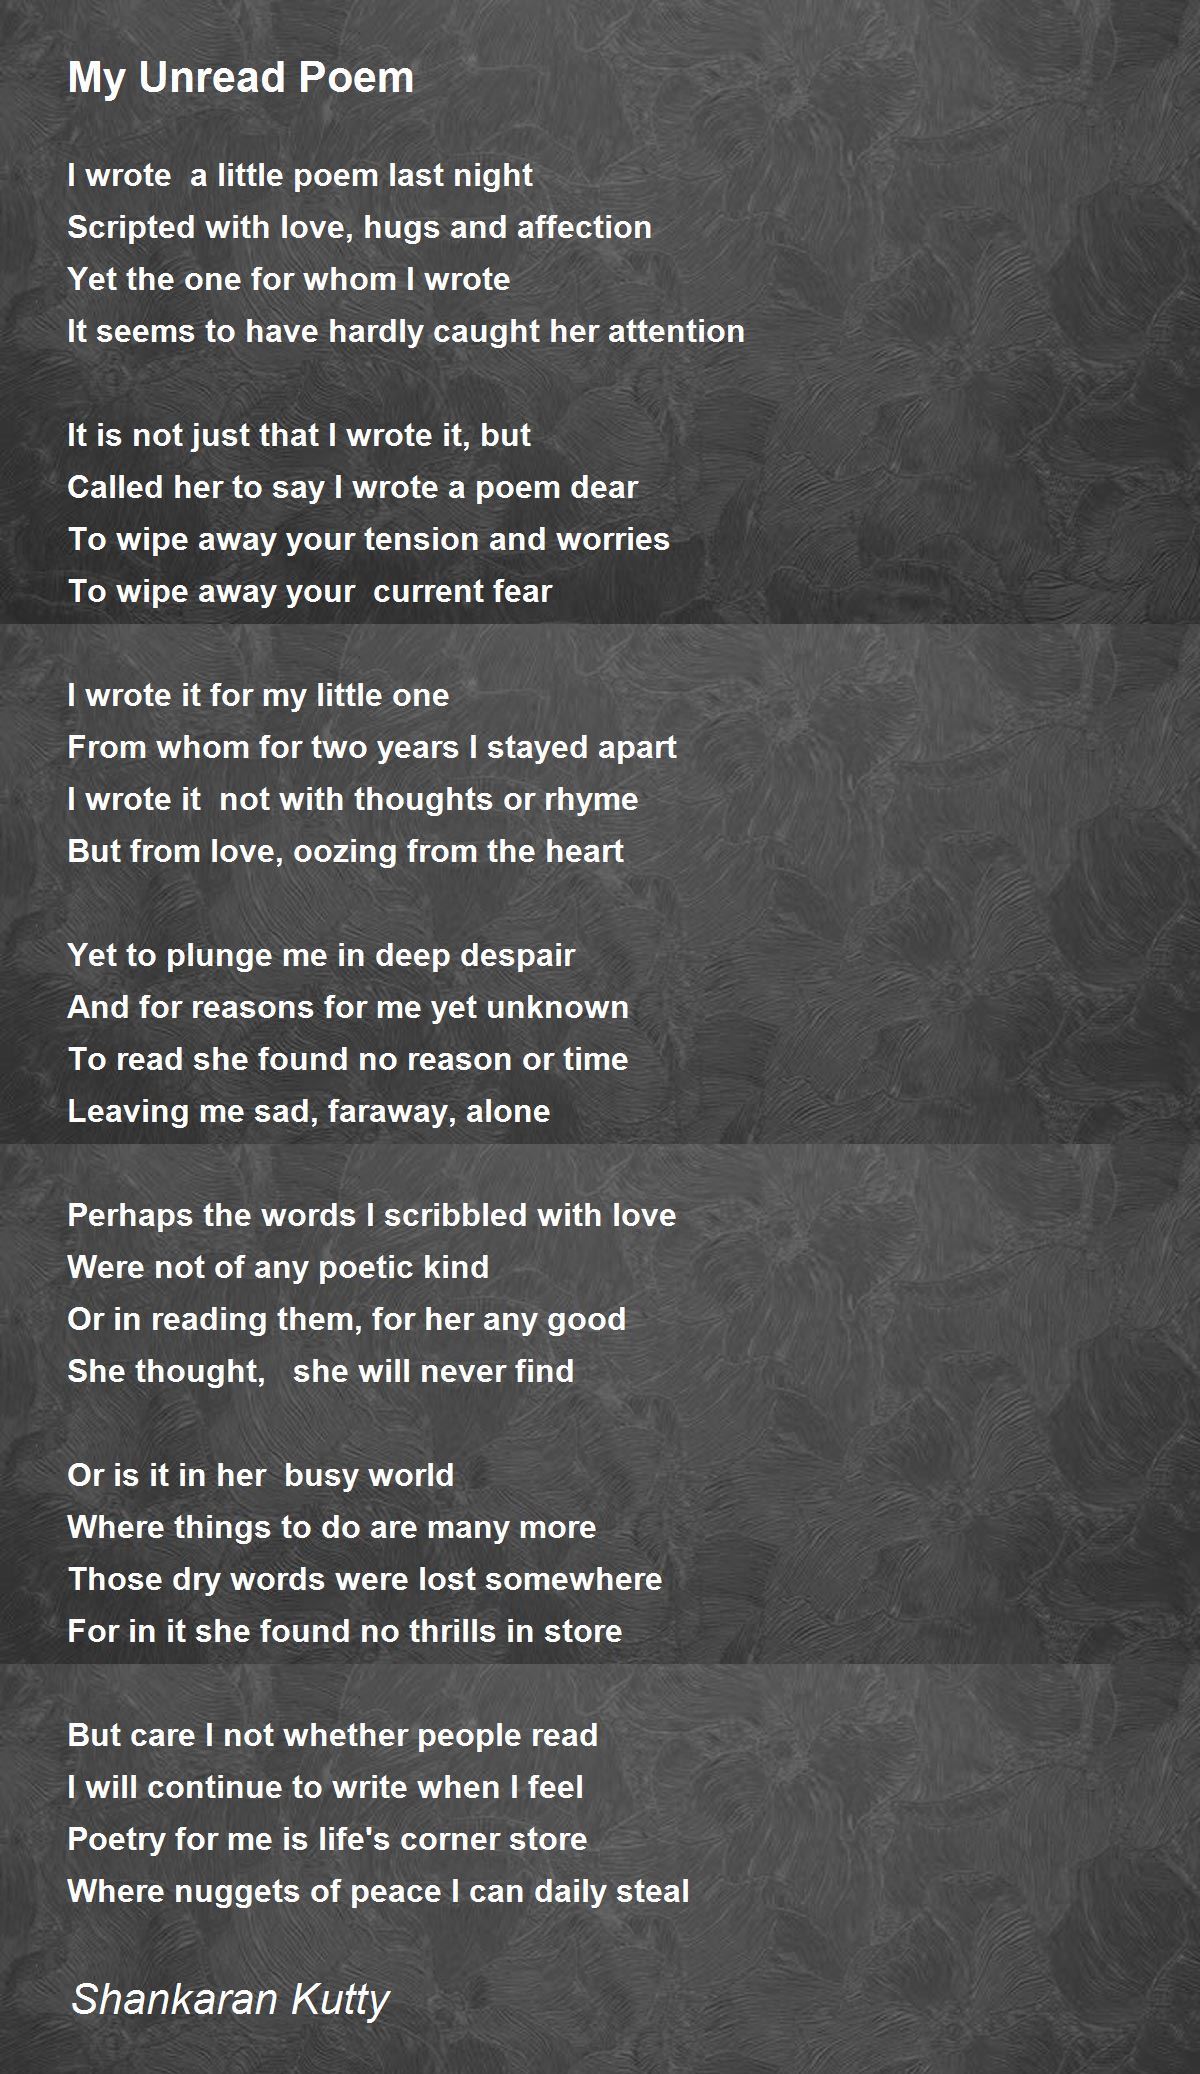 My Kingdom - My Kingdom Poem by Shankaran Kutty